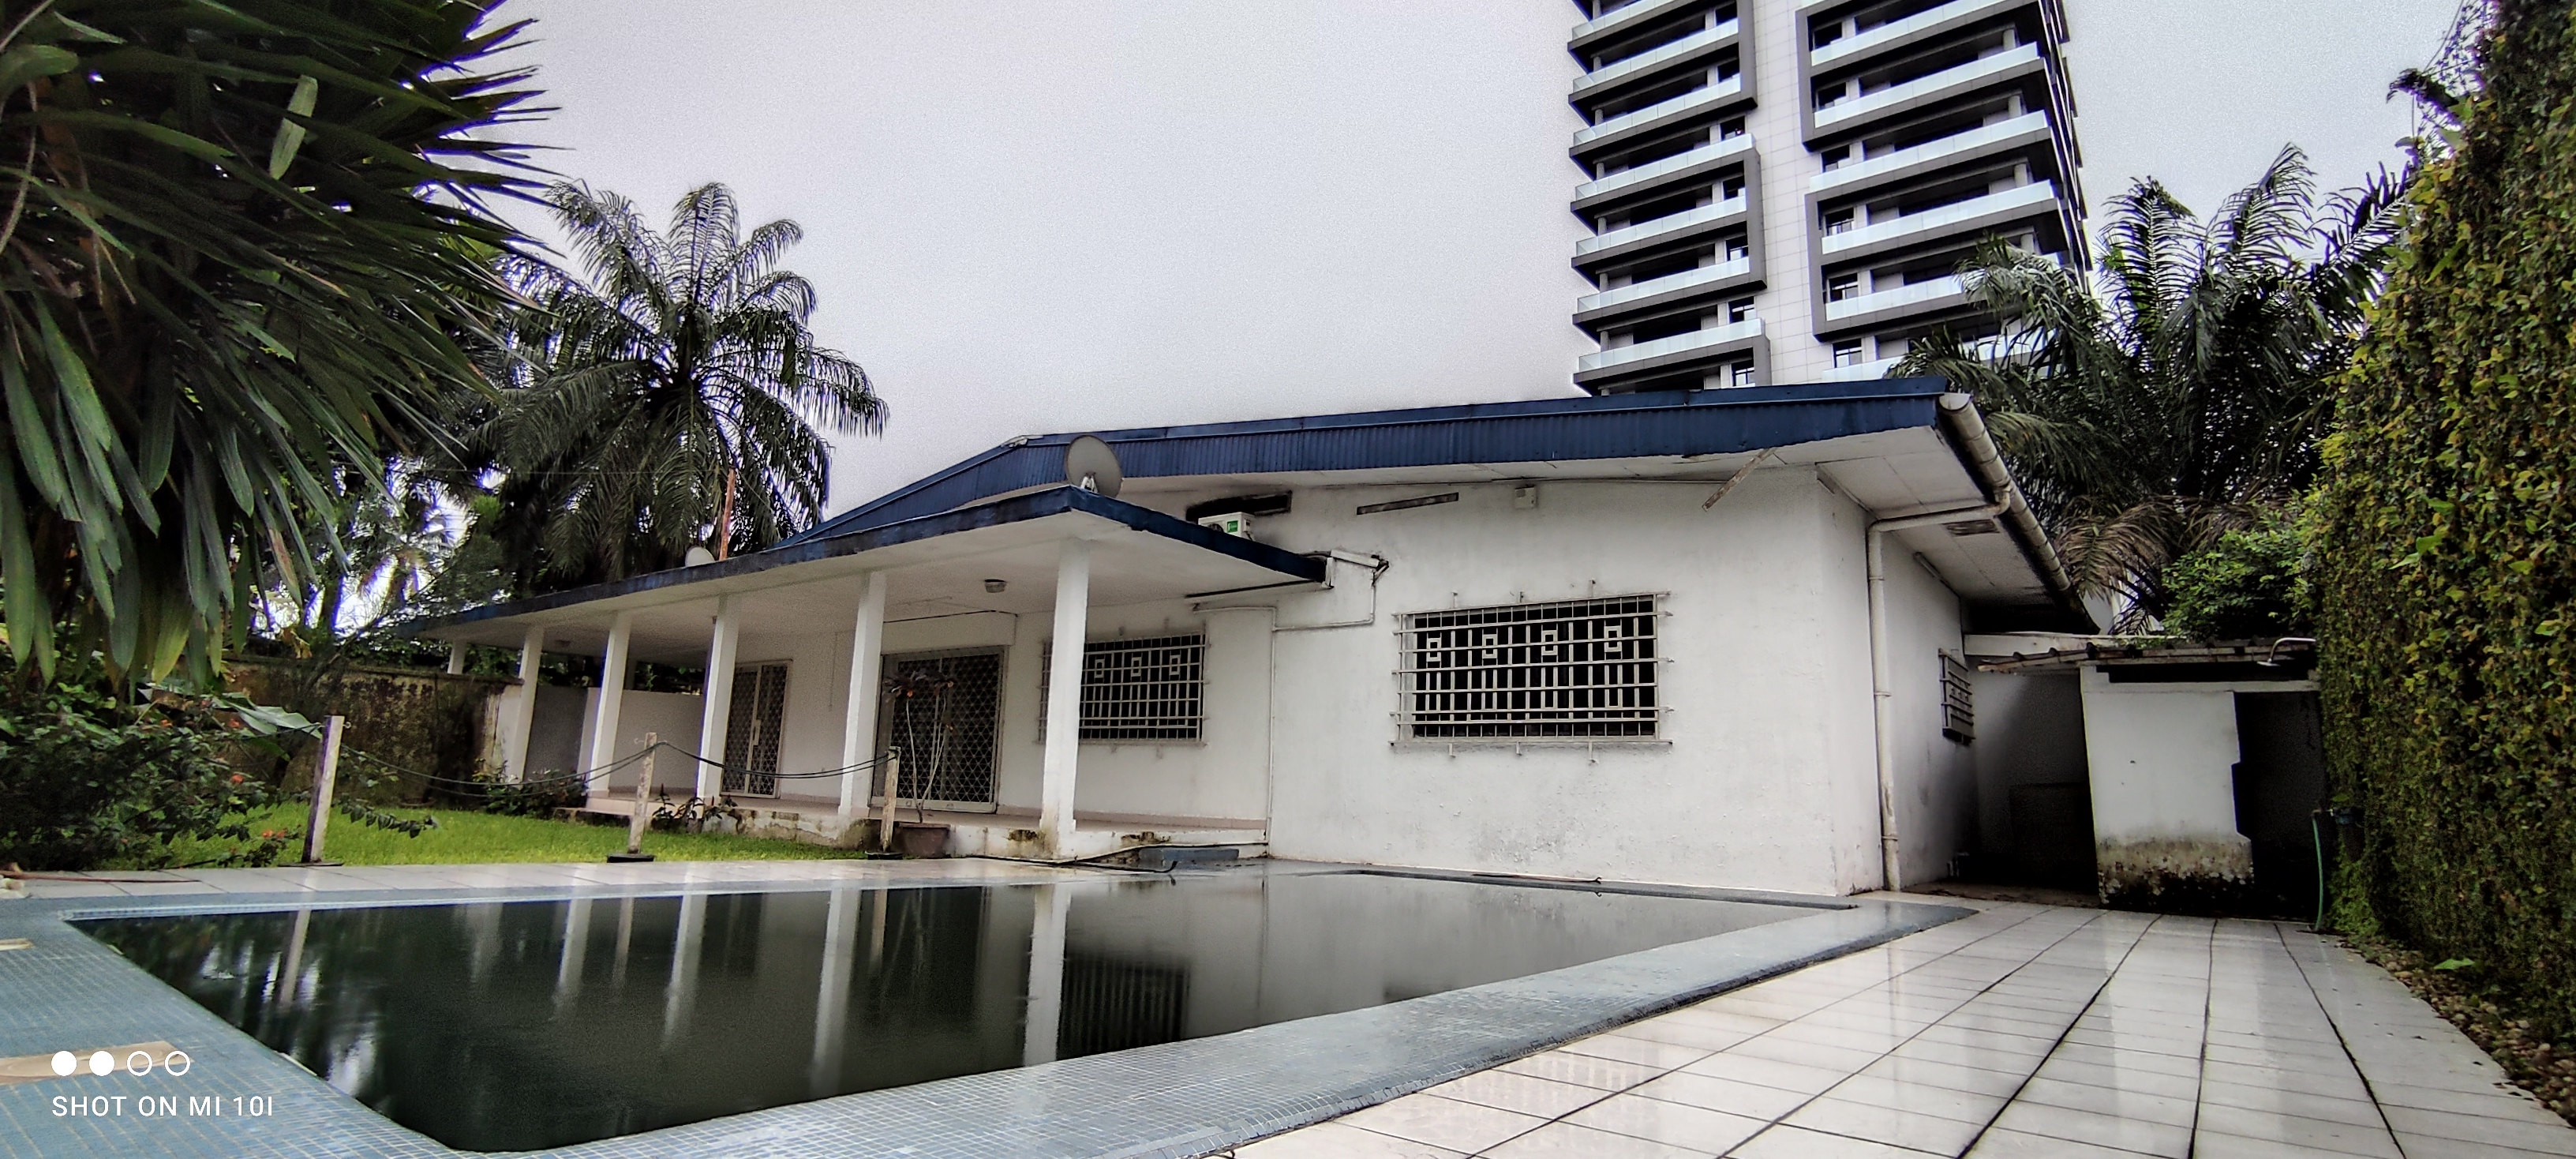 Maison (Villa) à louer - Douala, Bonapriso, Très bien située - 1 salon(s), 4 chambre(s), 3 salle(s) de bains - 2 500 000 FCFA / mois